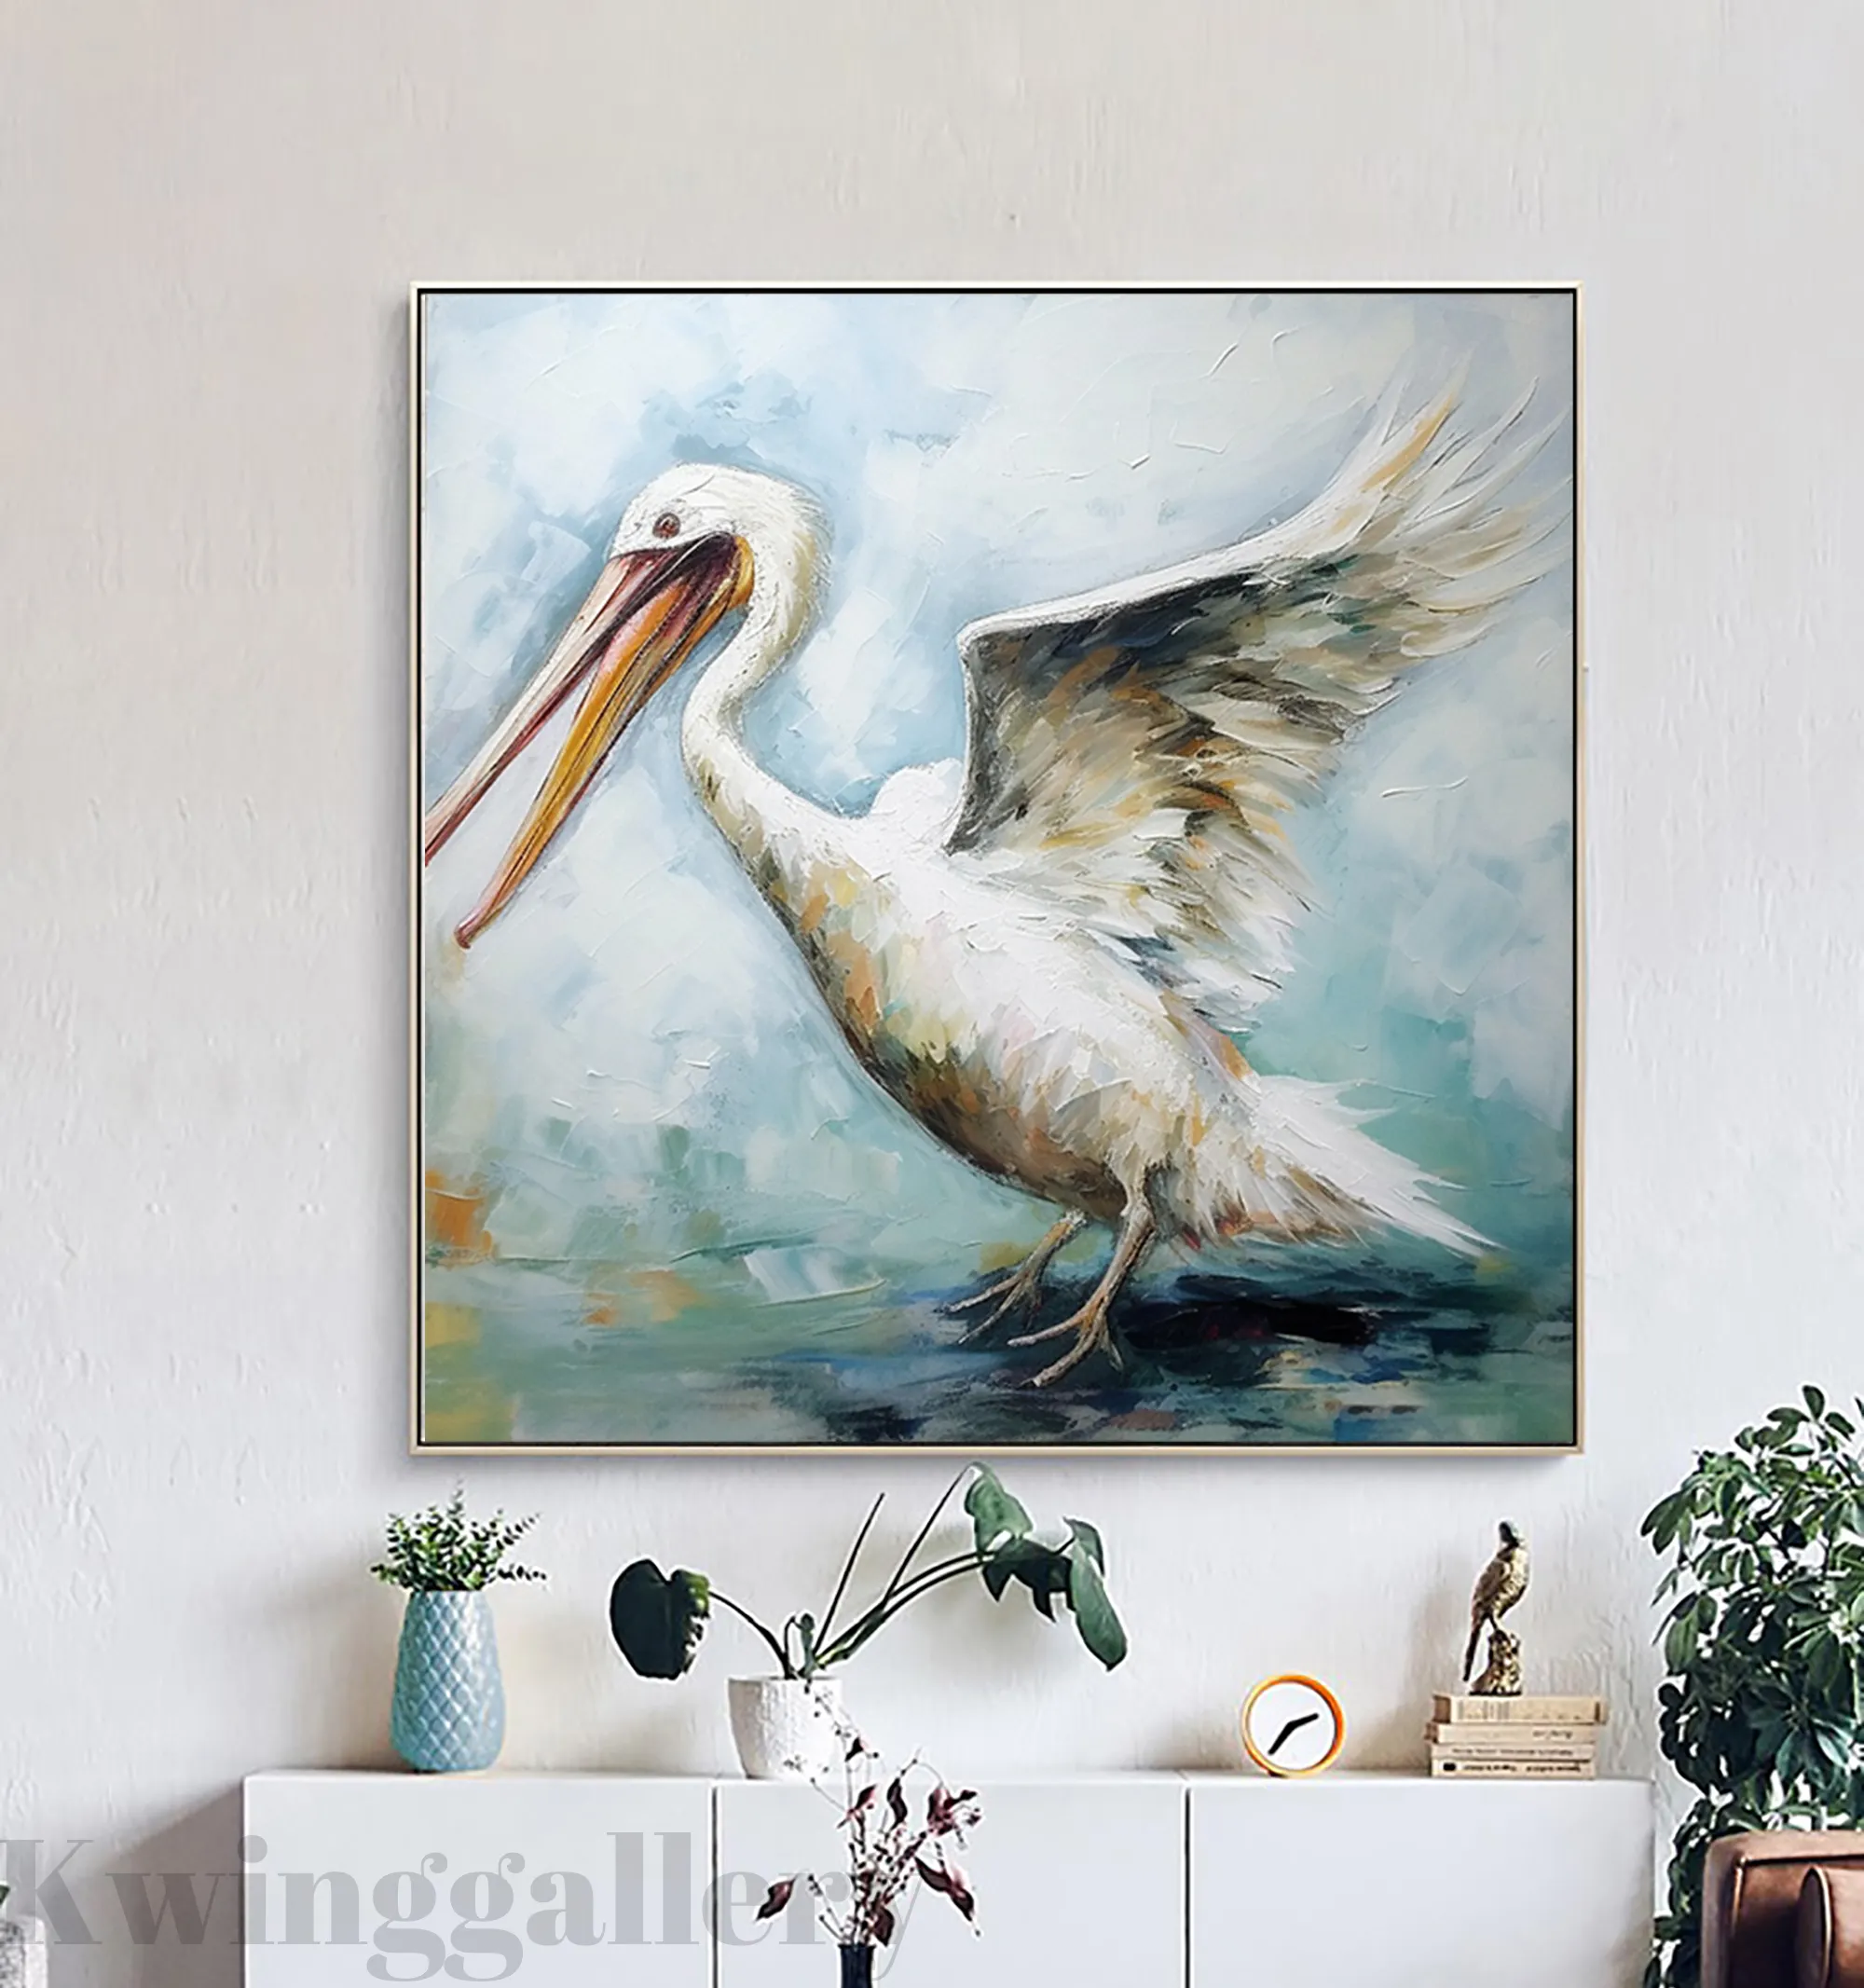 Абстрактная живопись пеликанов на холсте, настенная живопись, оригинальная картина с белыми птицами, креативная картина маслом ручной работы с животными для декора комнаты